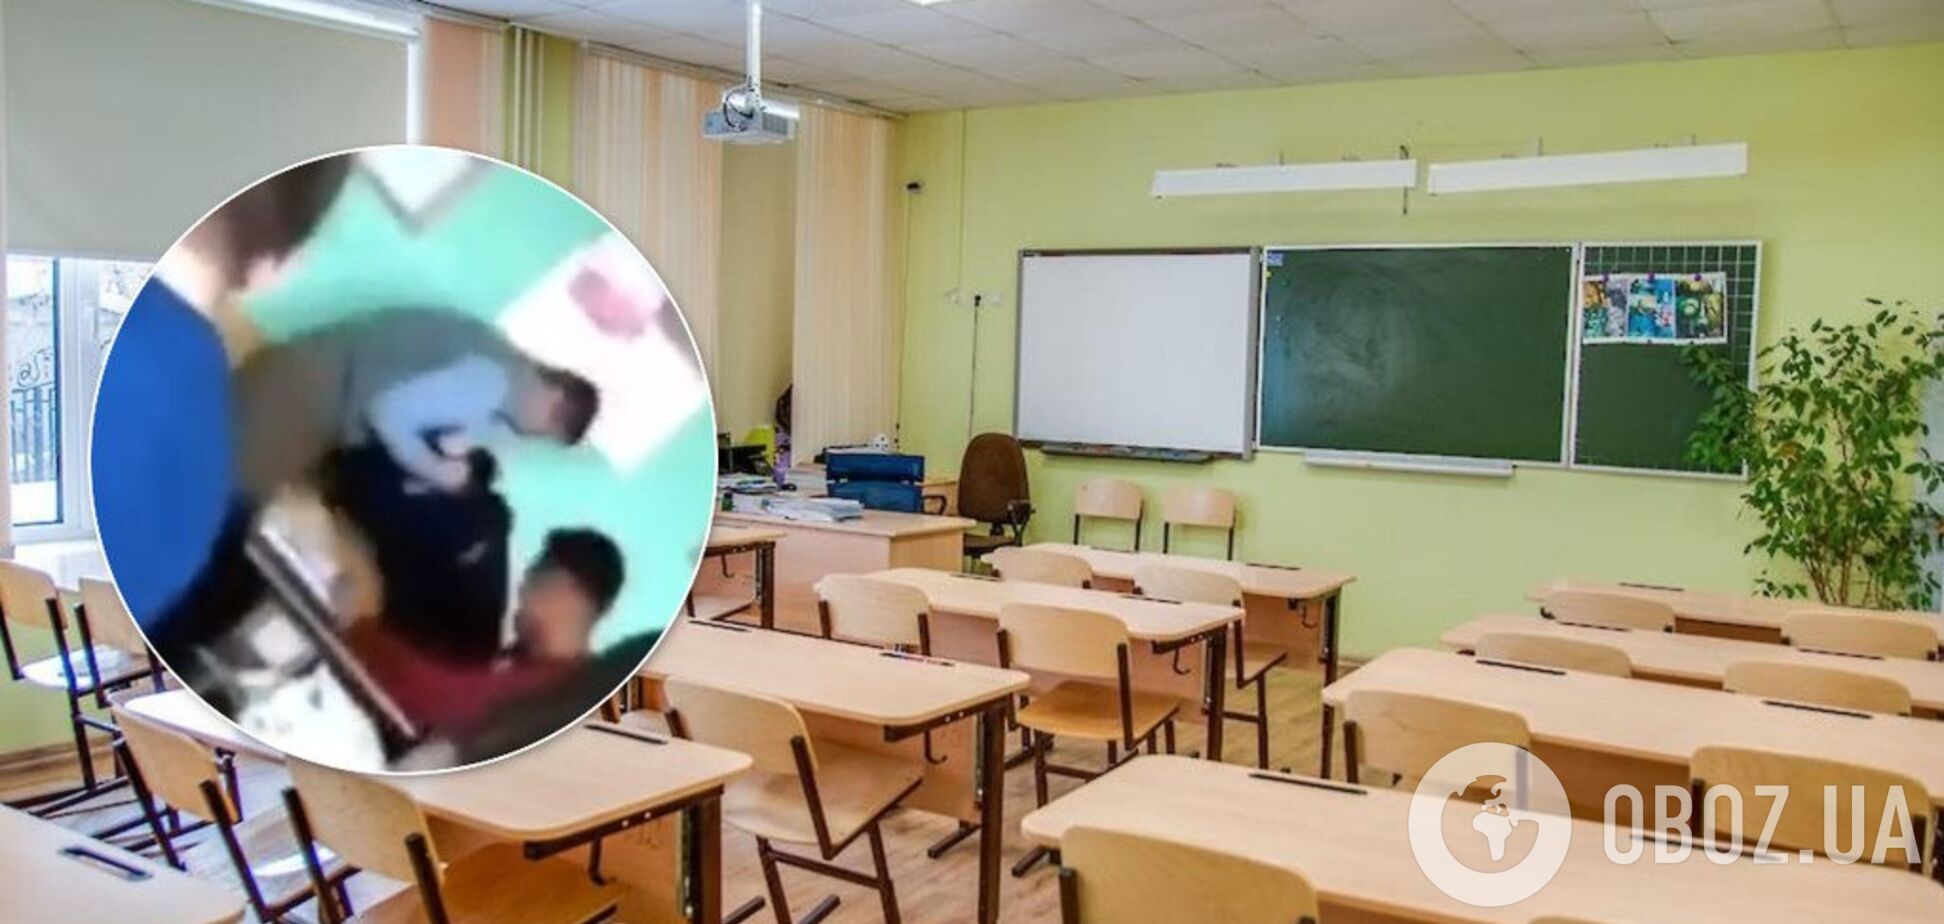 'Бил головой об стол': на Буковине учитель наказал старшеклассника за плохое поведение